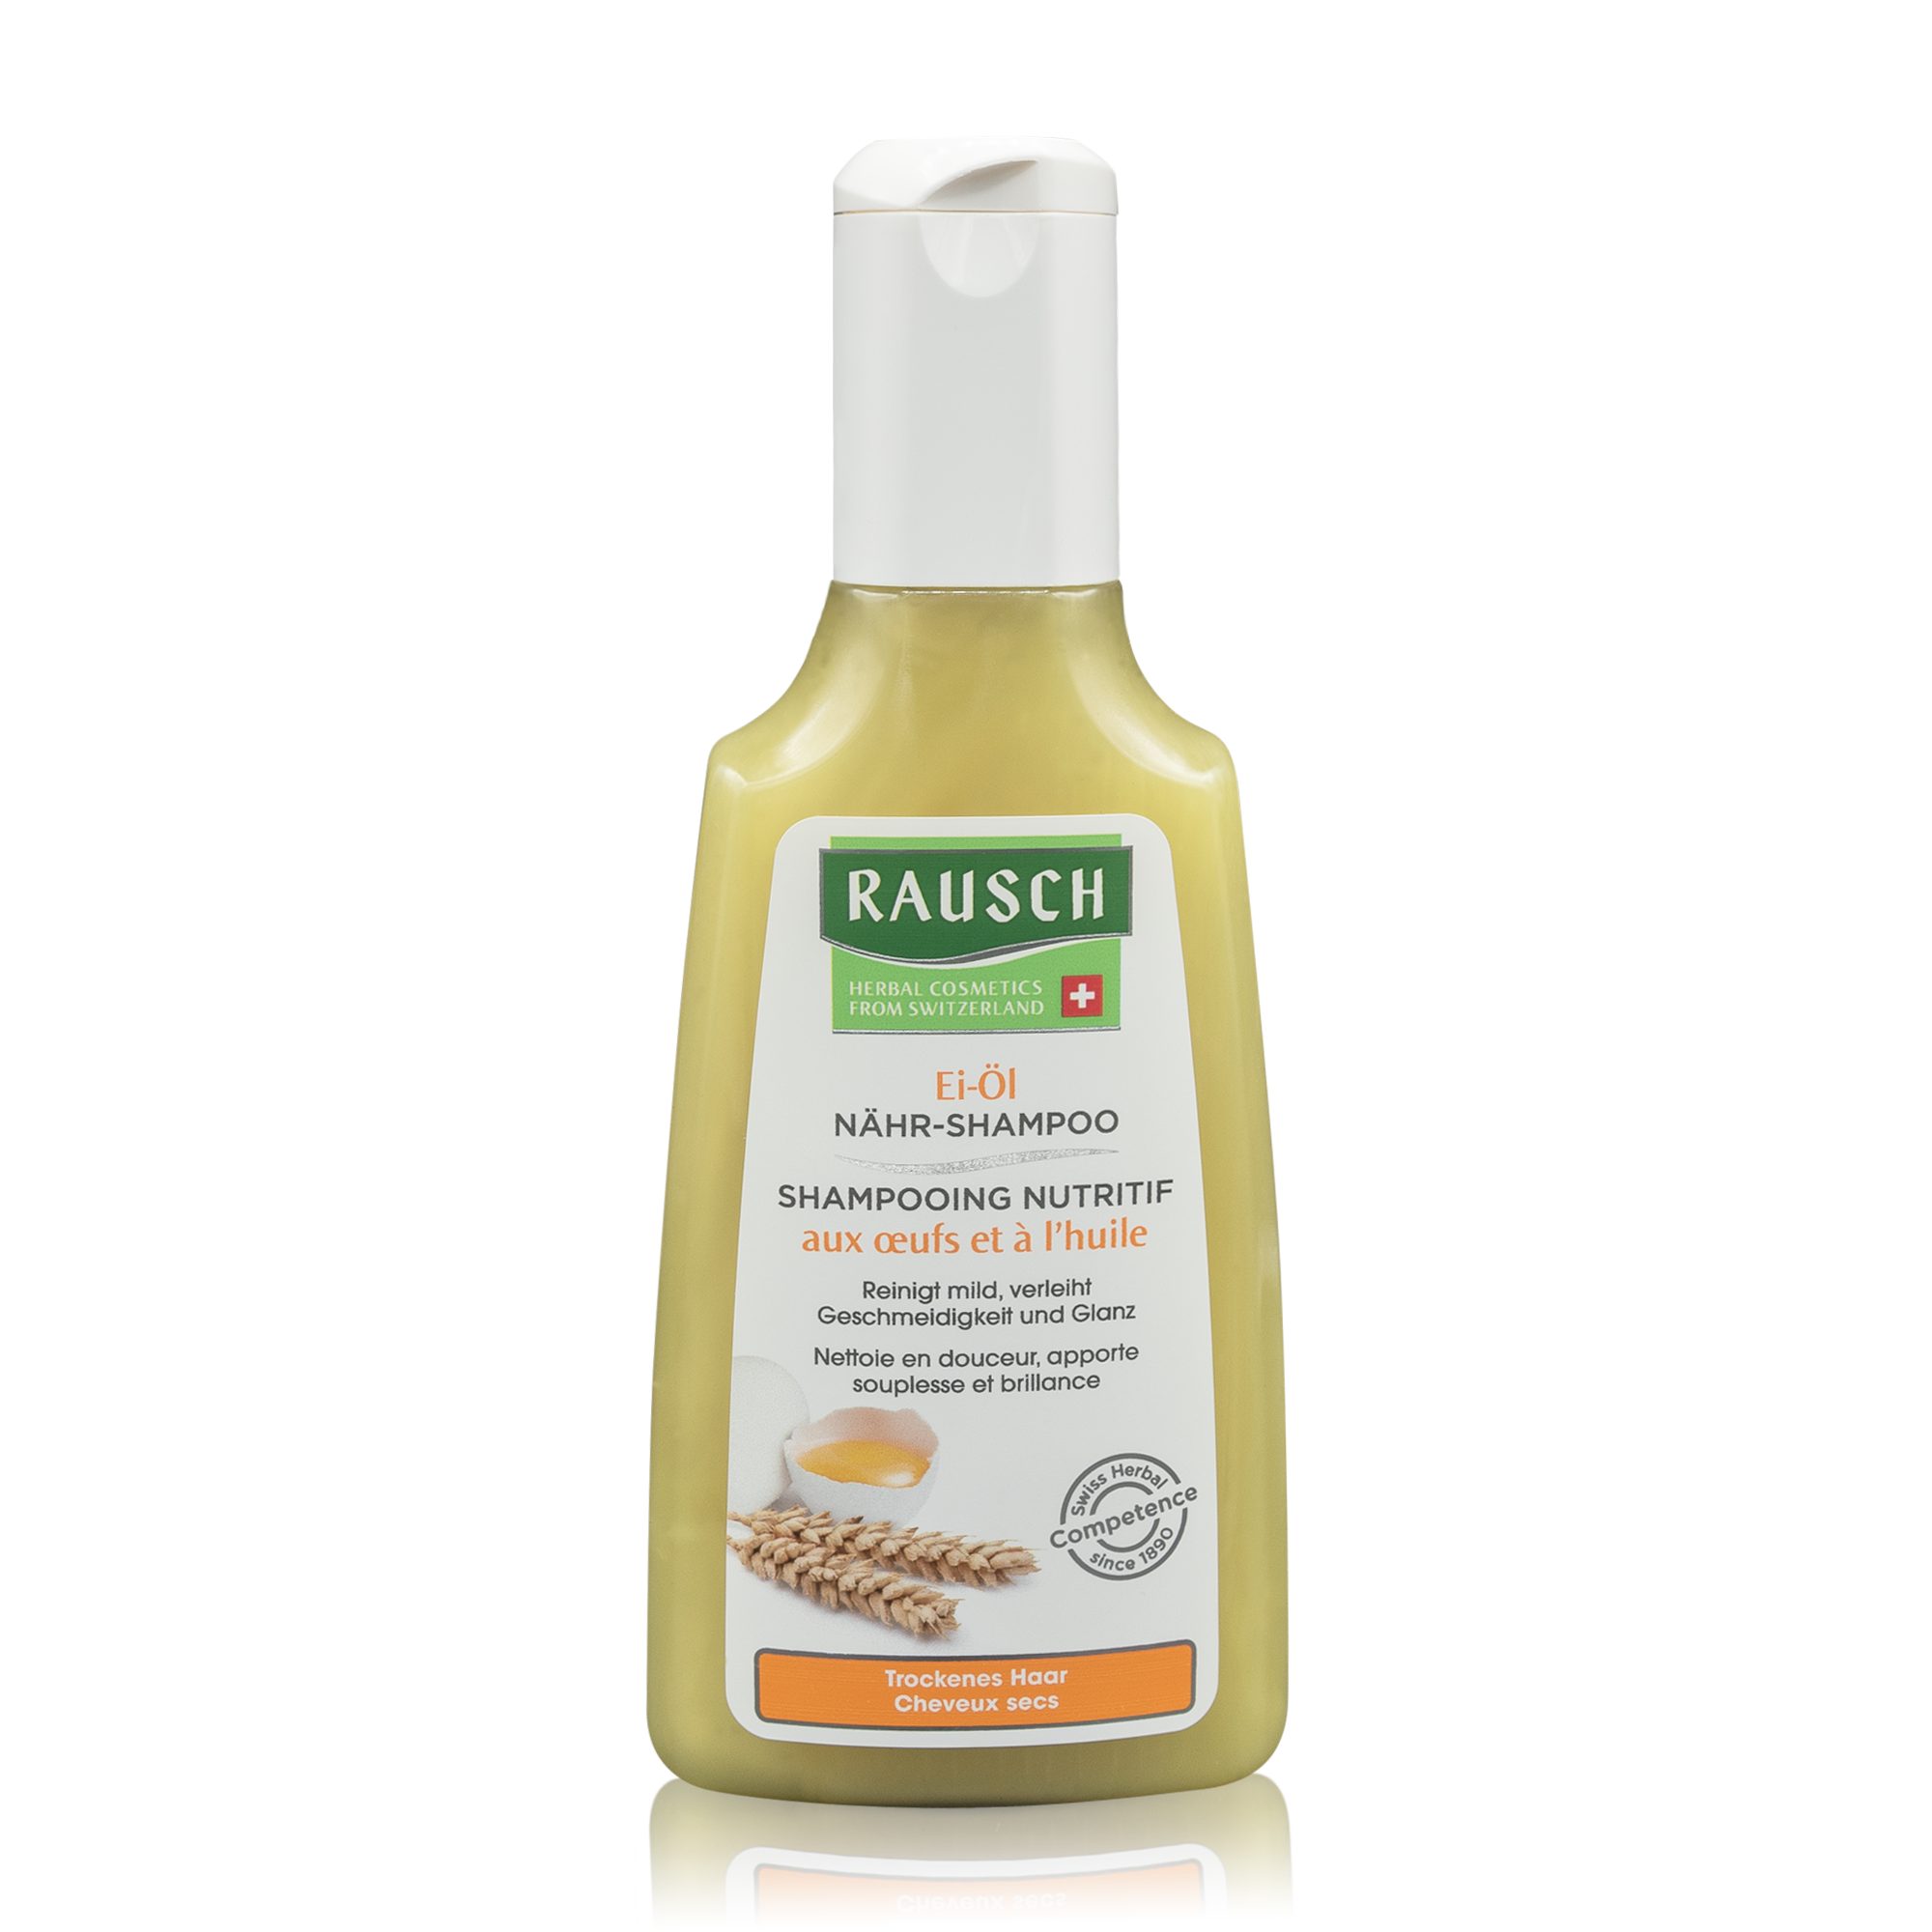 RAUSCH (Deutschland) GmbH Haarshampoo Rausch Ei-Öl Nähr-Shampoo (200ml), Hilft besonders bei trockenem Haar.